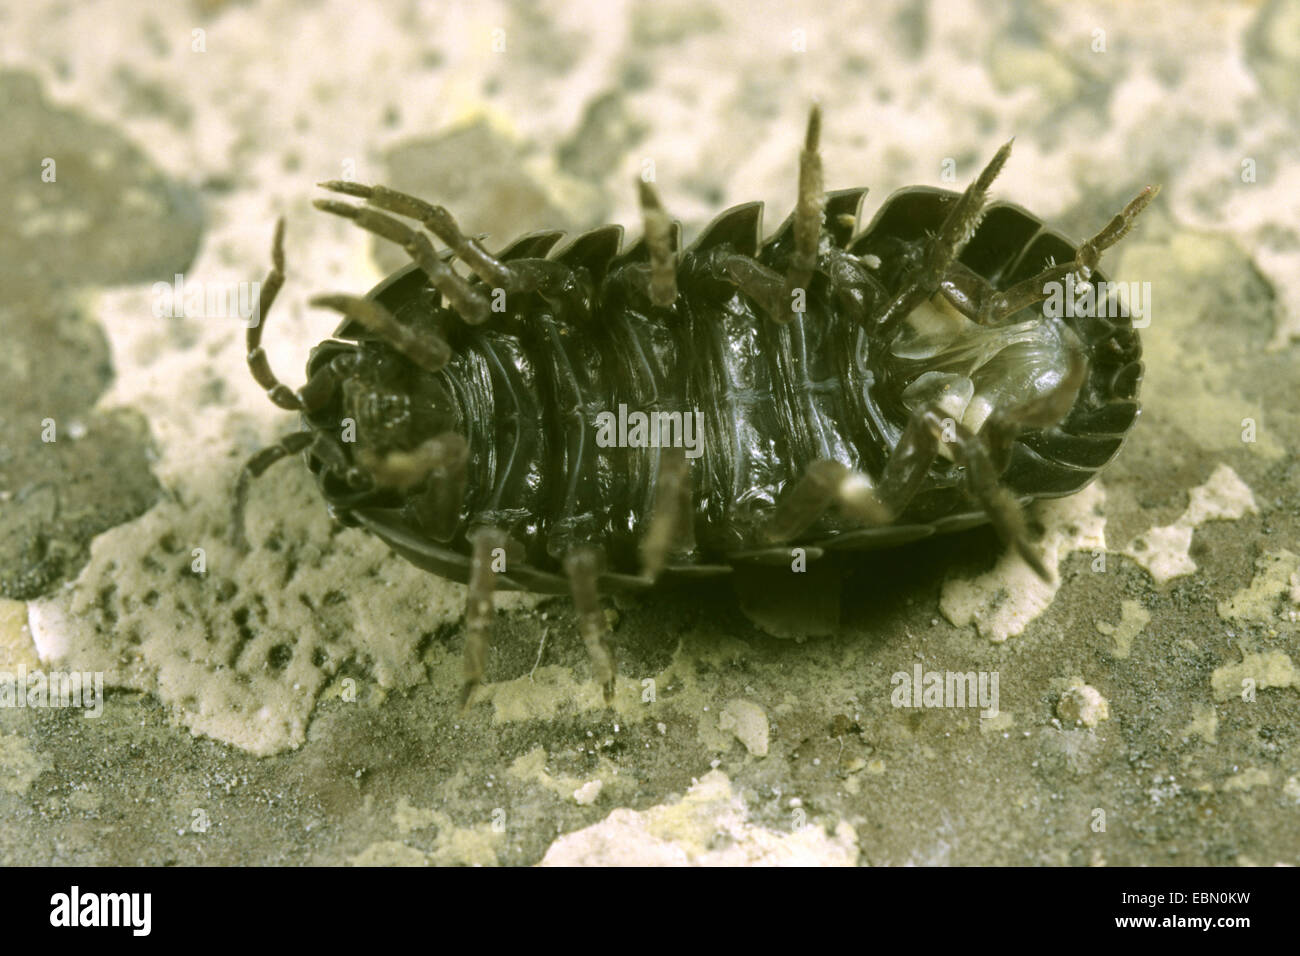 Cloporte commun, les cloportes vulgaires, sow bug (Armadillidium vulgare), en position couchée, Allemagne Banque D'Images